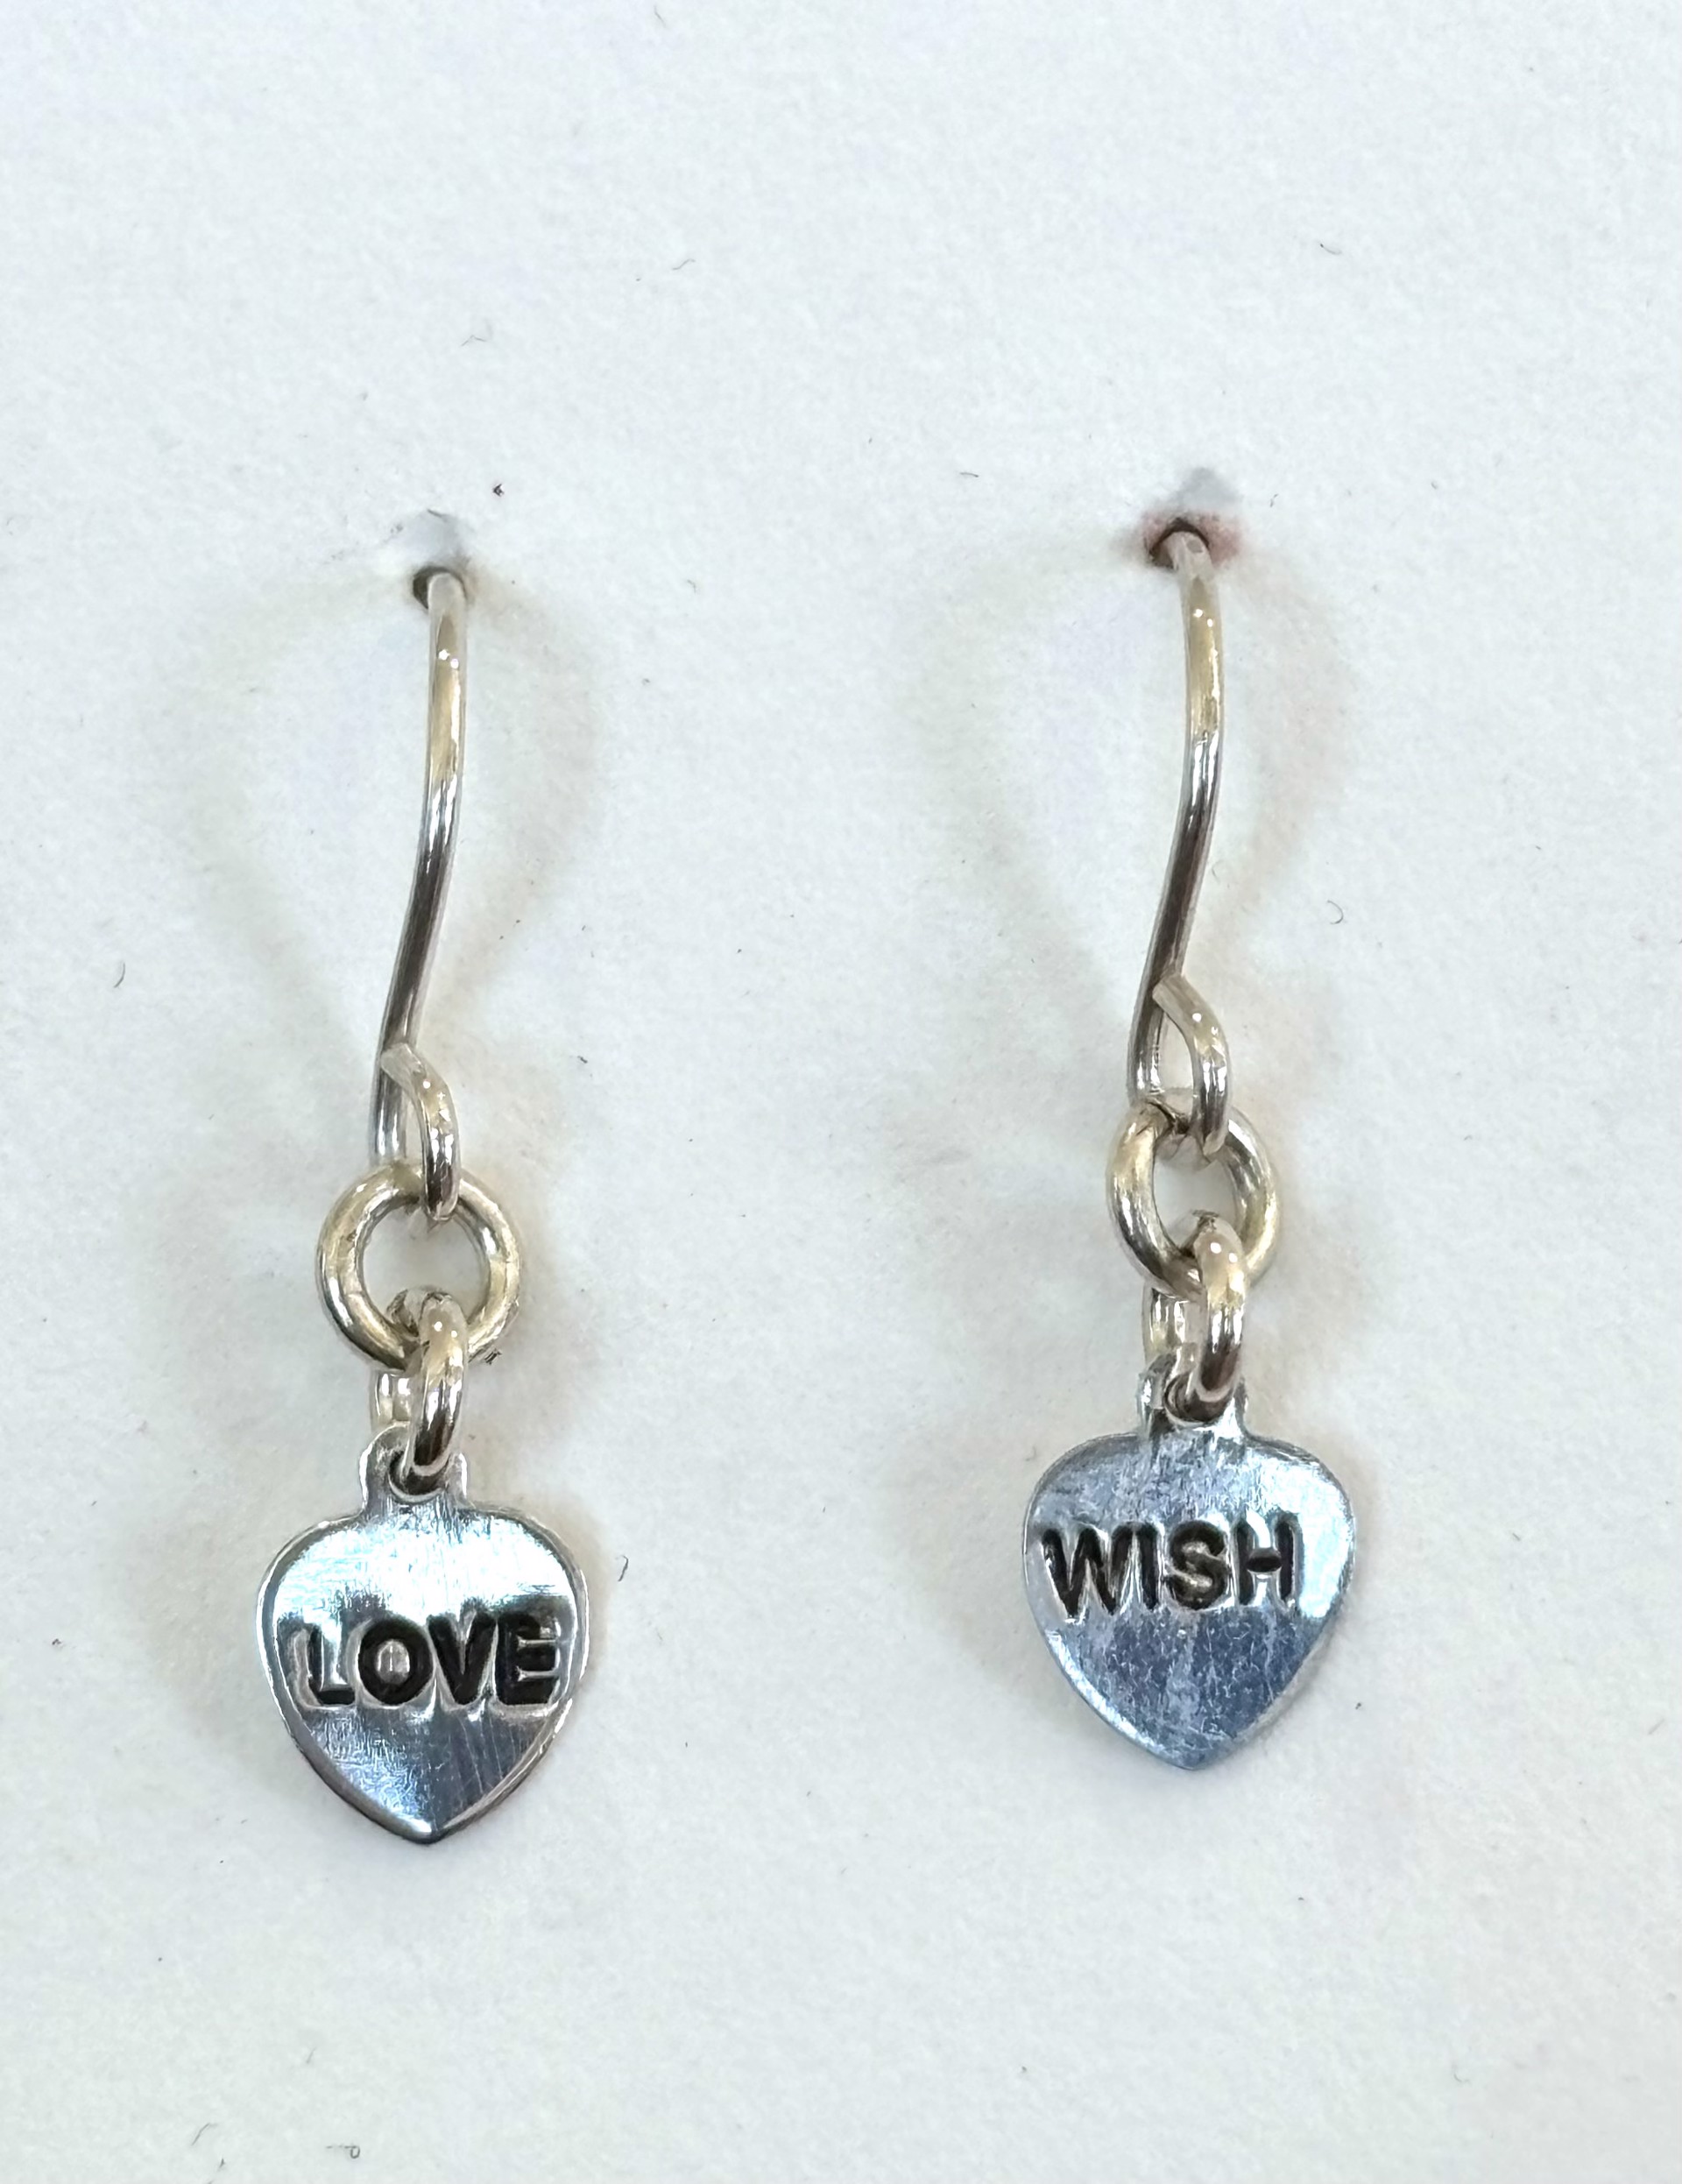 Love Wish Mantra Earrings by Emelie Hebert